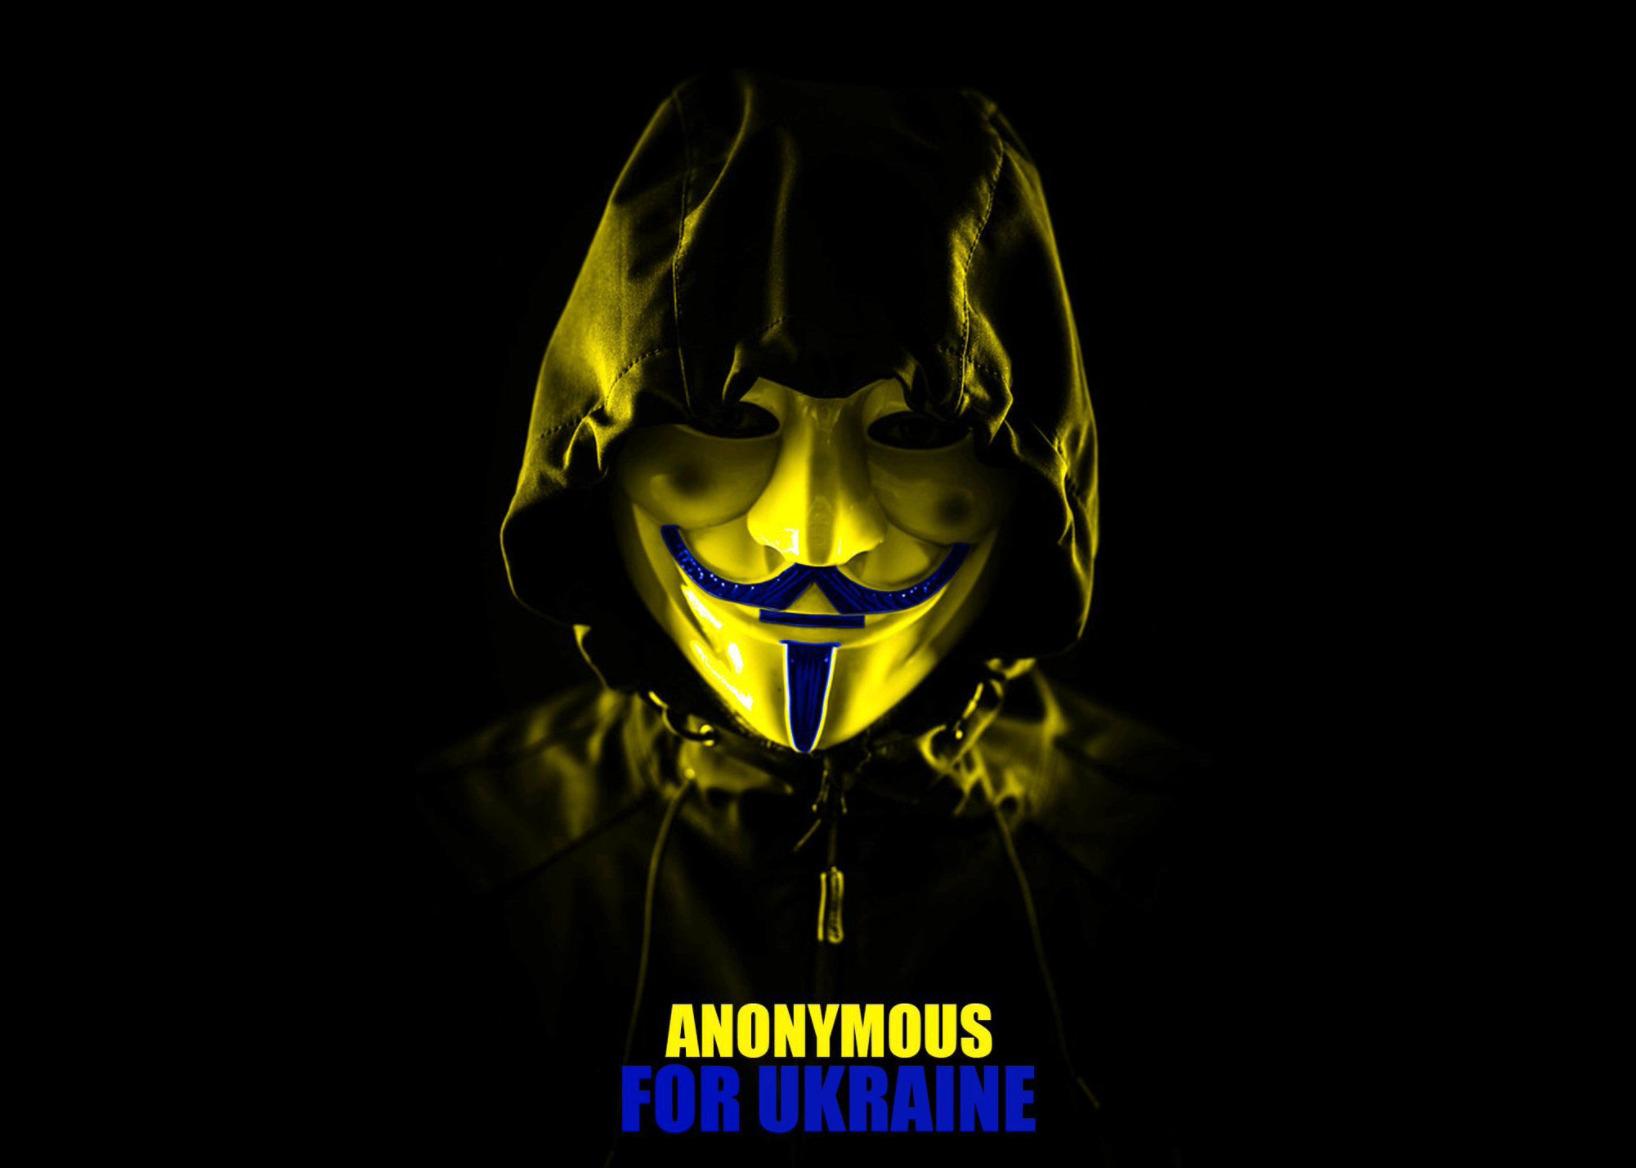 nhom-hacker-khet-tieng-anonymous-tuyen-chien-voi-chinh-phu-nga-quyet-tam-ho-tro-ukraine